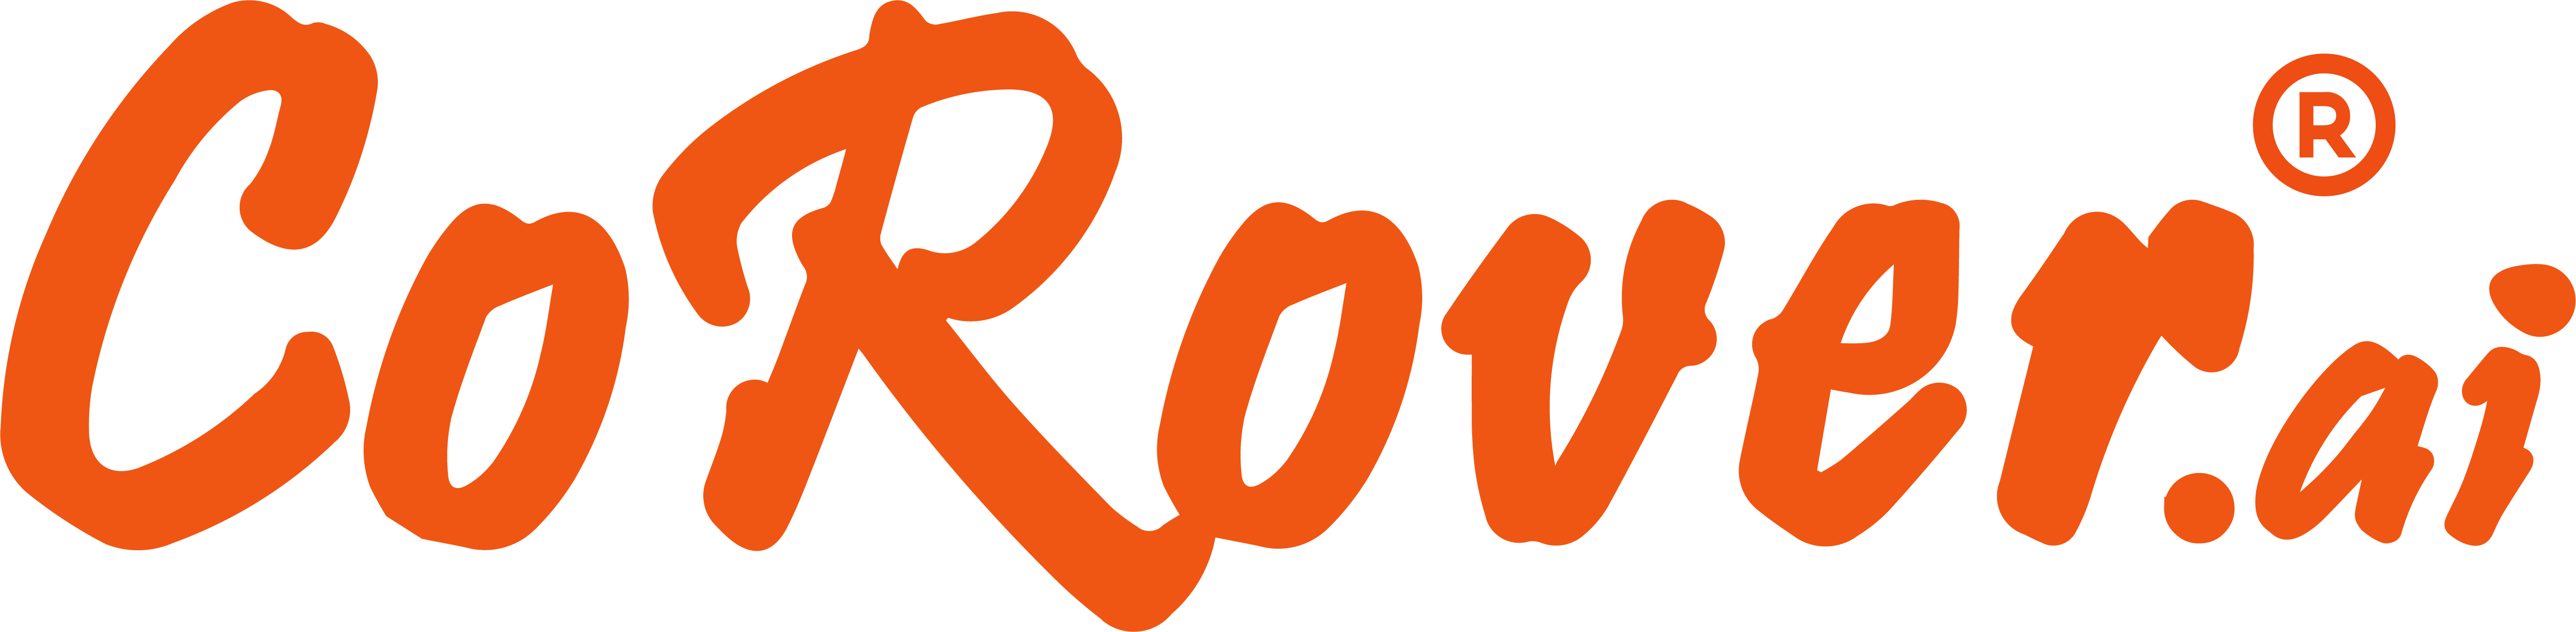 CoRover Logo